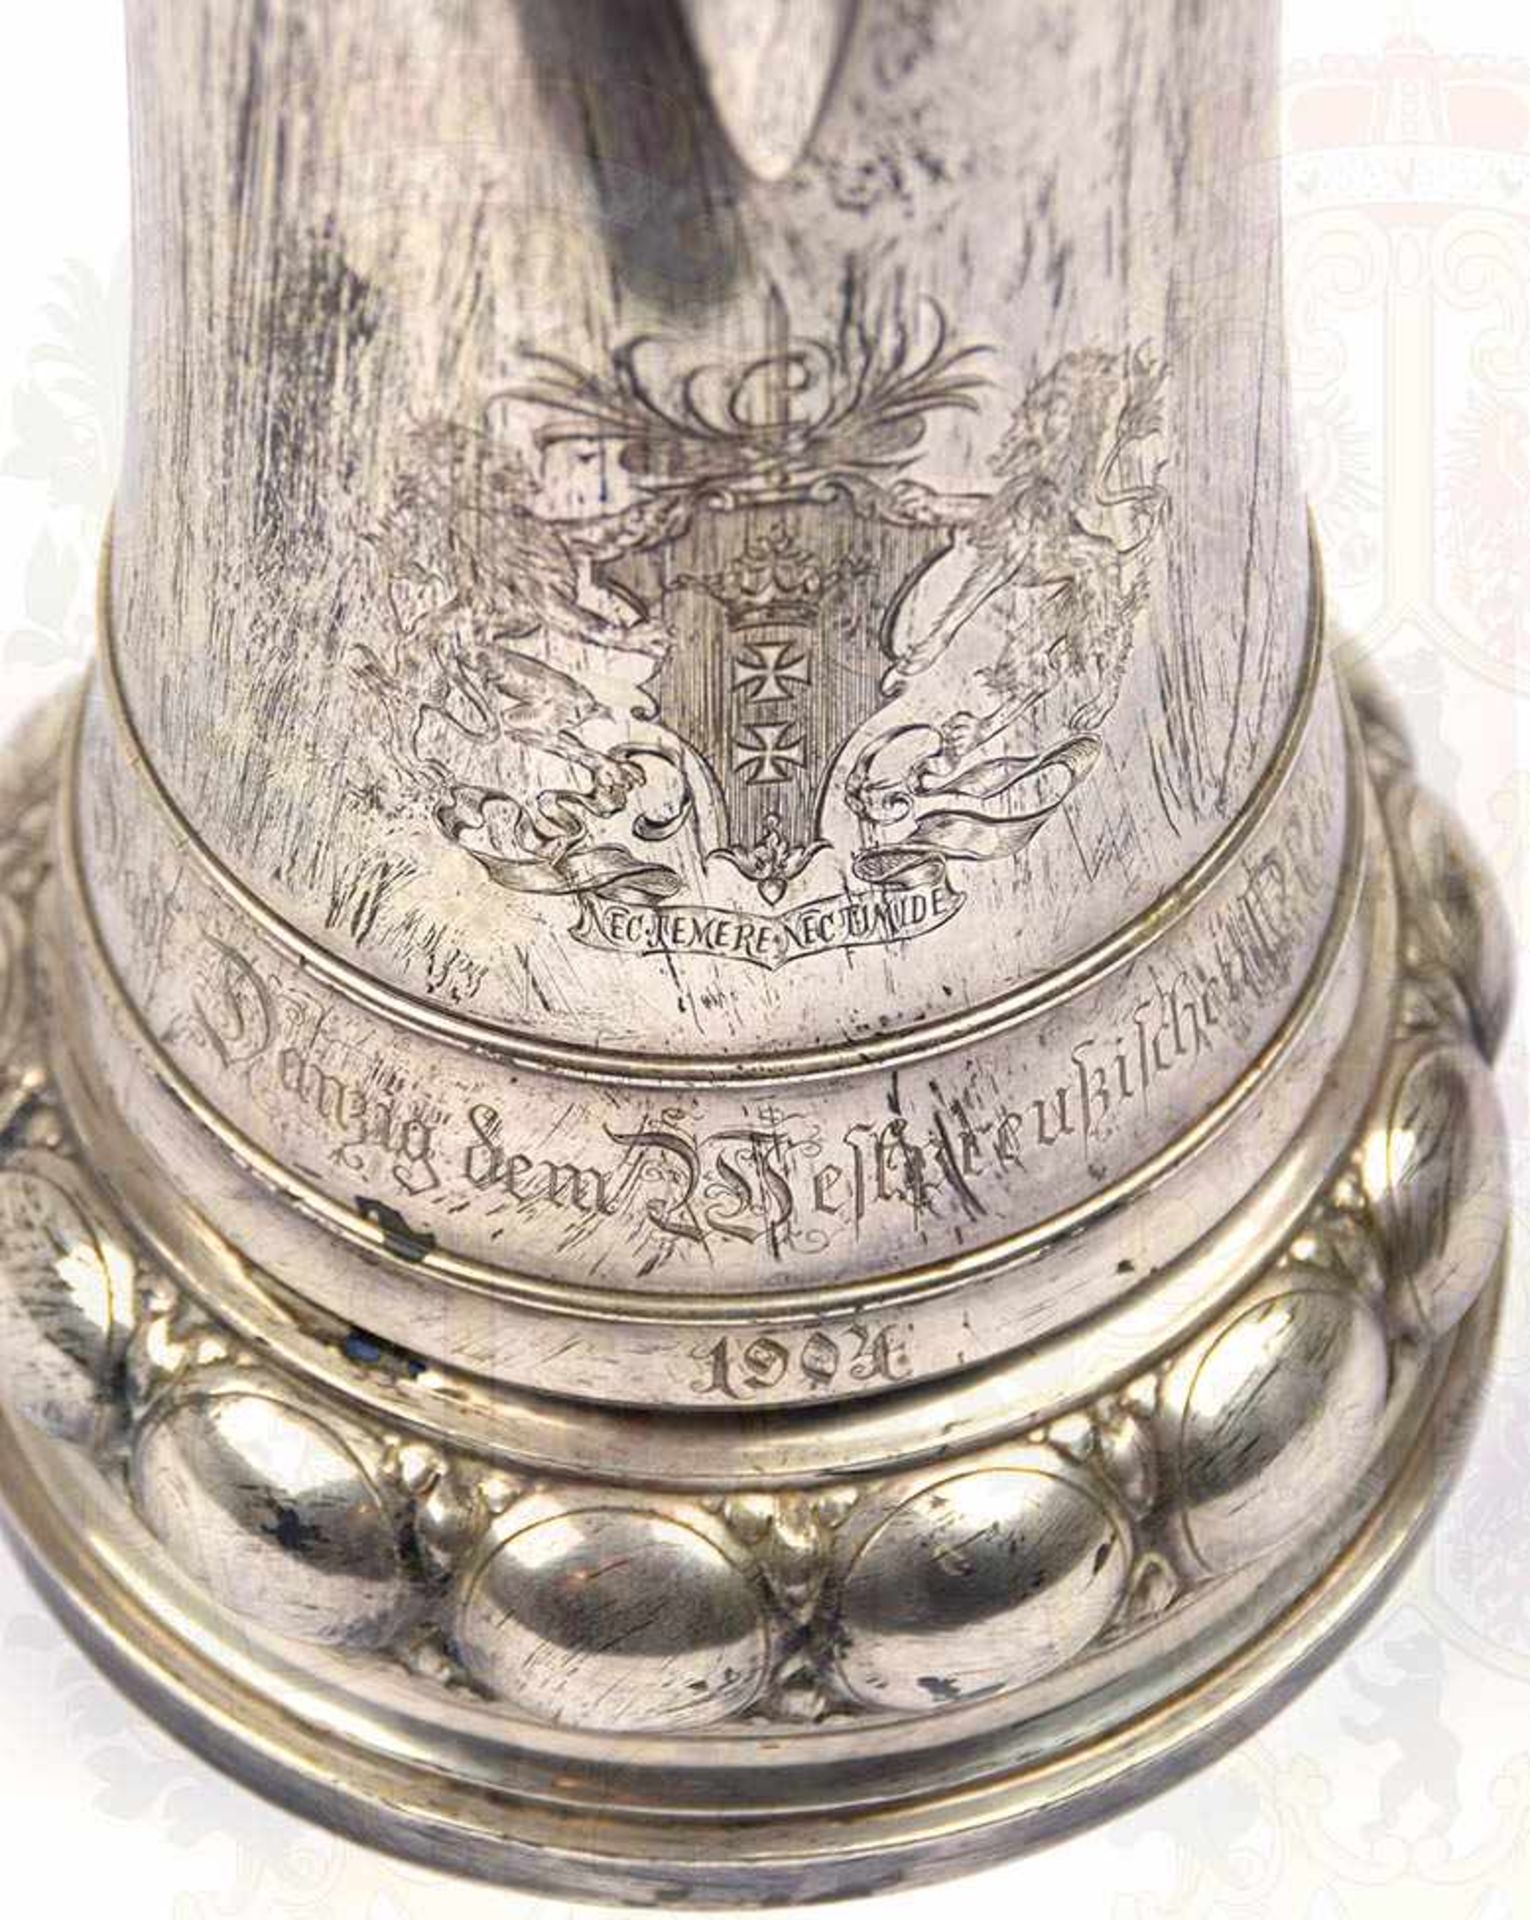 EHRENGESCHENK DER STADT DANZIG 1904, große Silberkanne, Silber/punziert „800“ m. Krone, Halbmond - Bild 2 aus 4